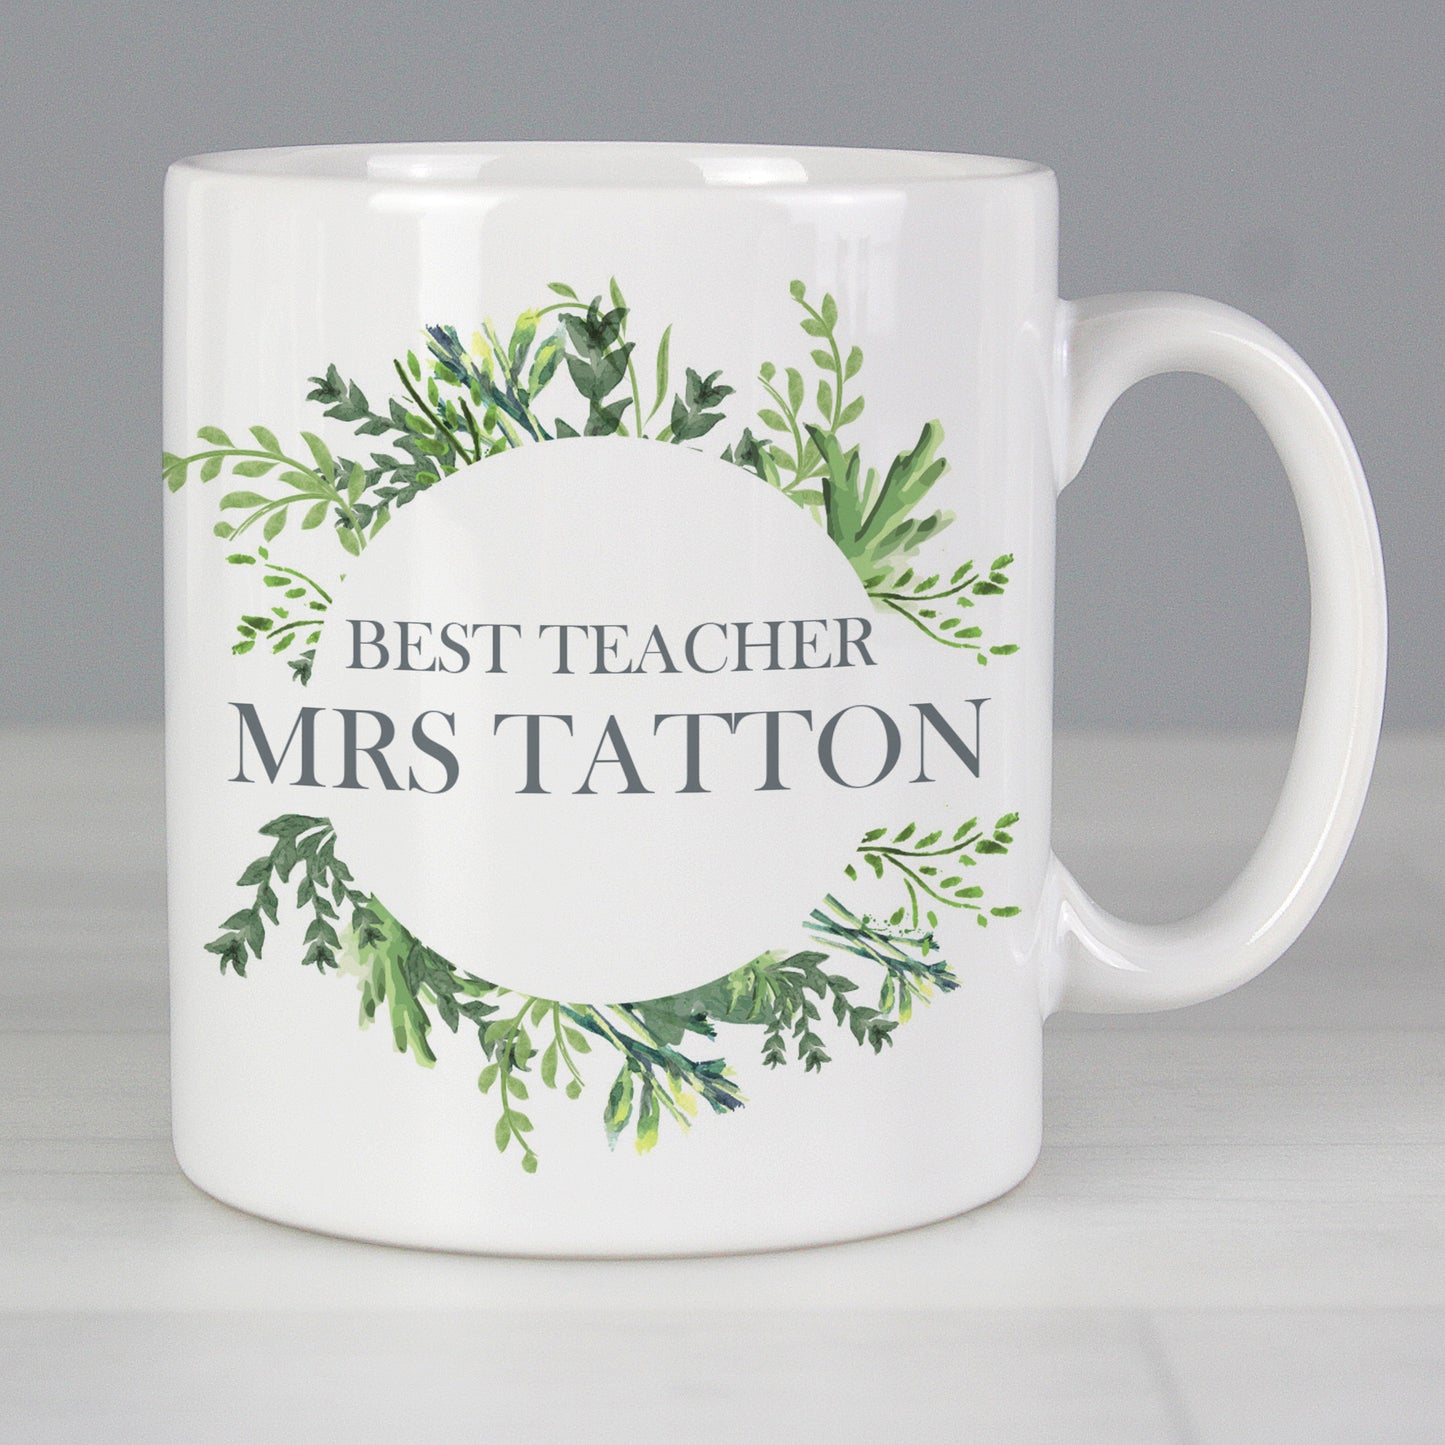 Personalised Botanical Mug - Personalise It!